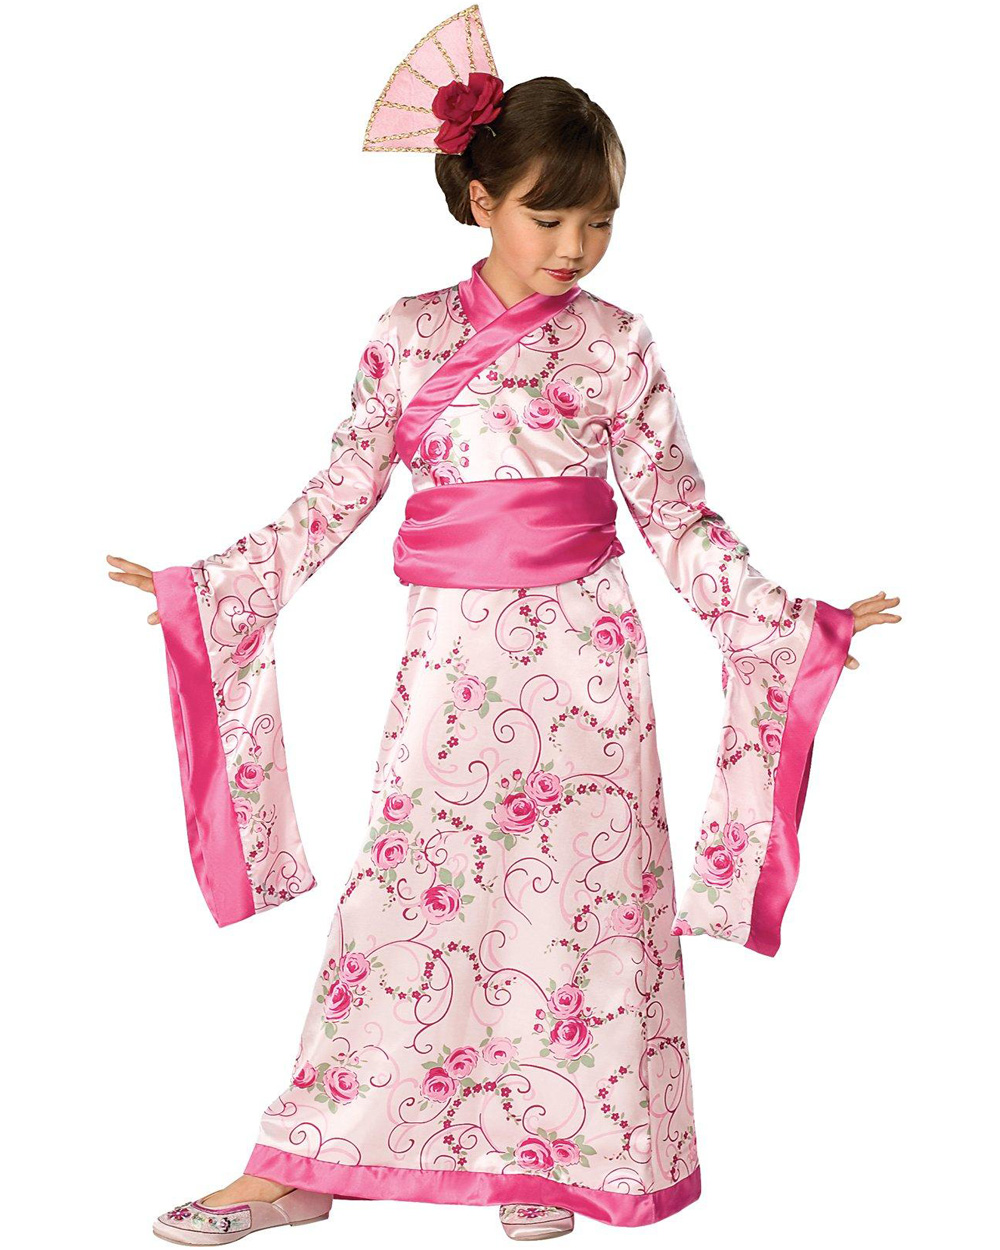 festival kimono outfit